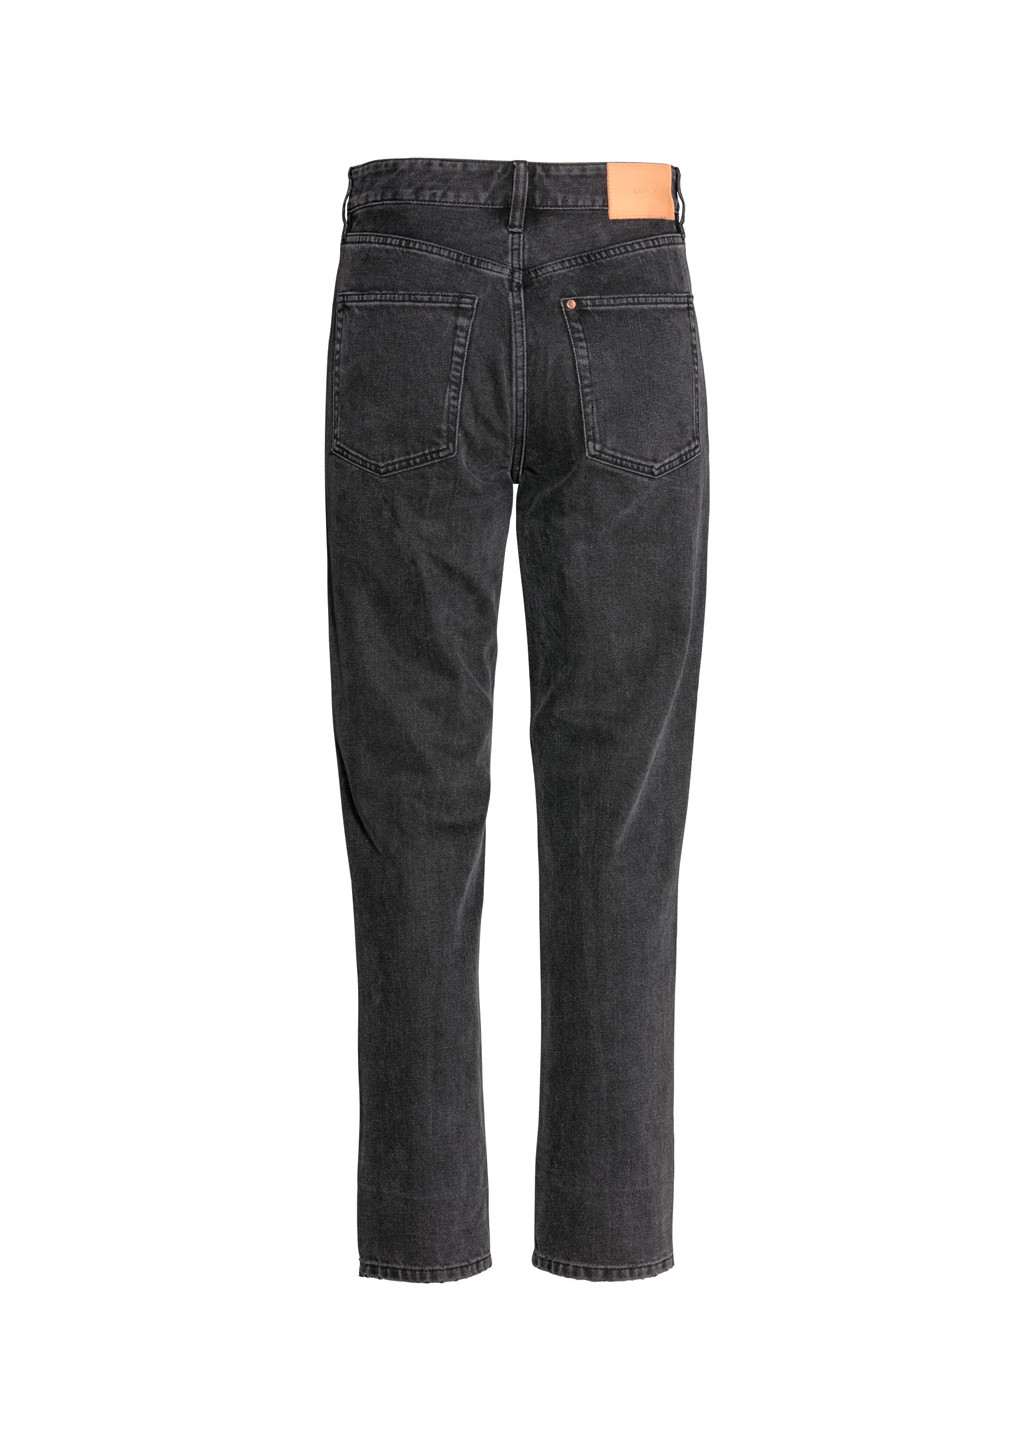 Темно-серые демисезонные зауженные, укороченные джинсы H&M